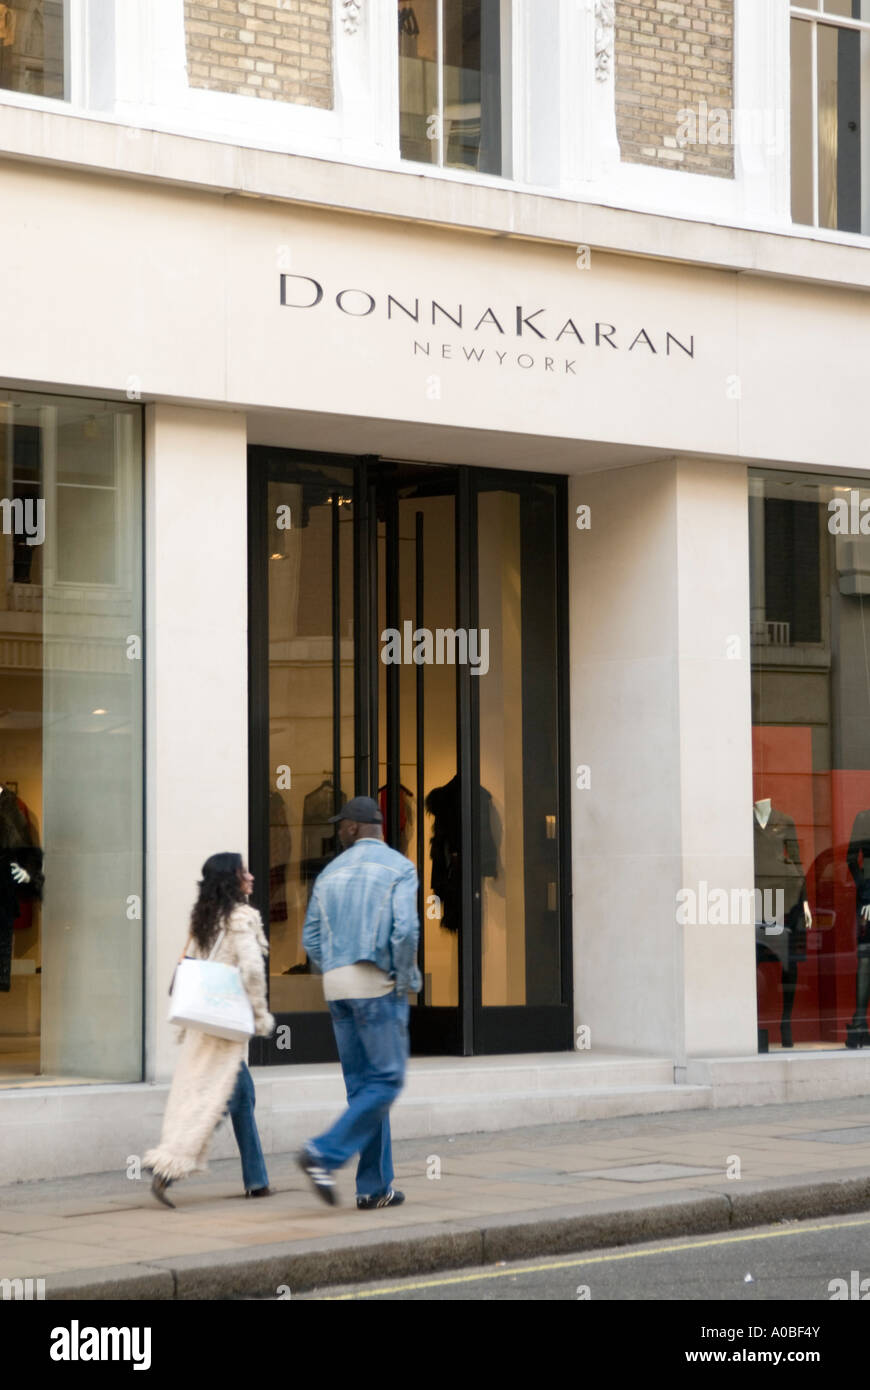 Donna Karan finds inspiration outside her window - Deseret News